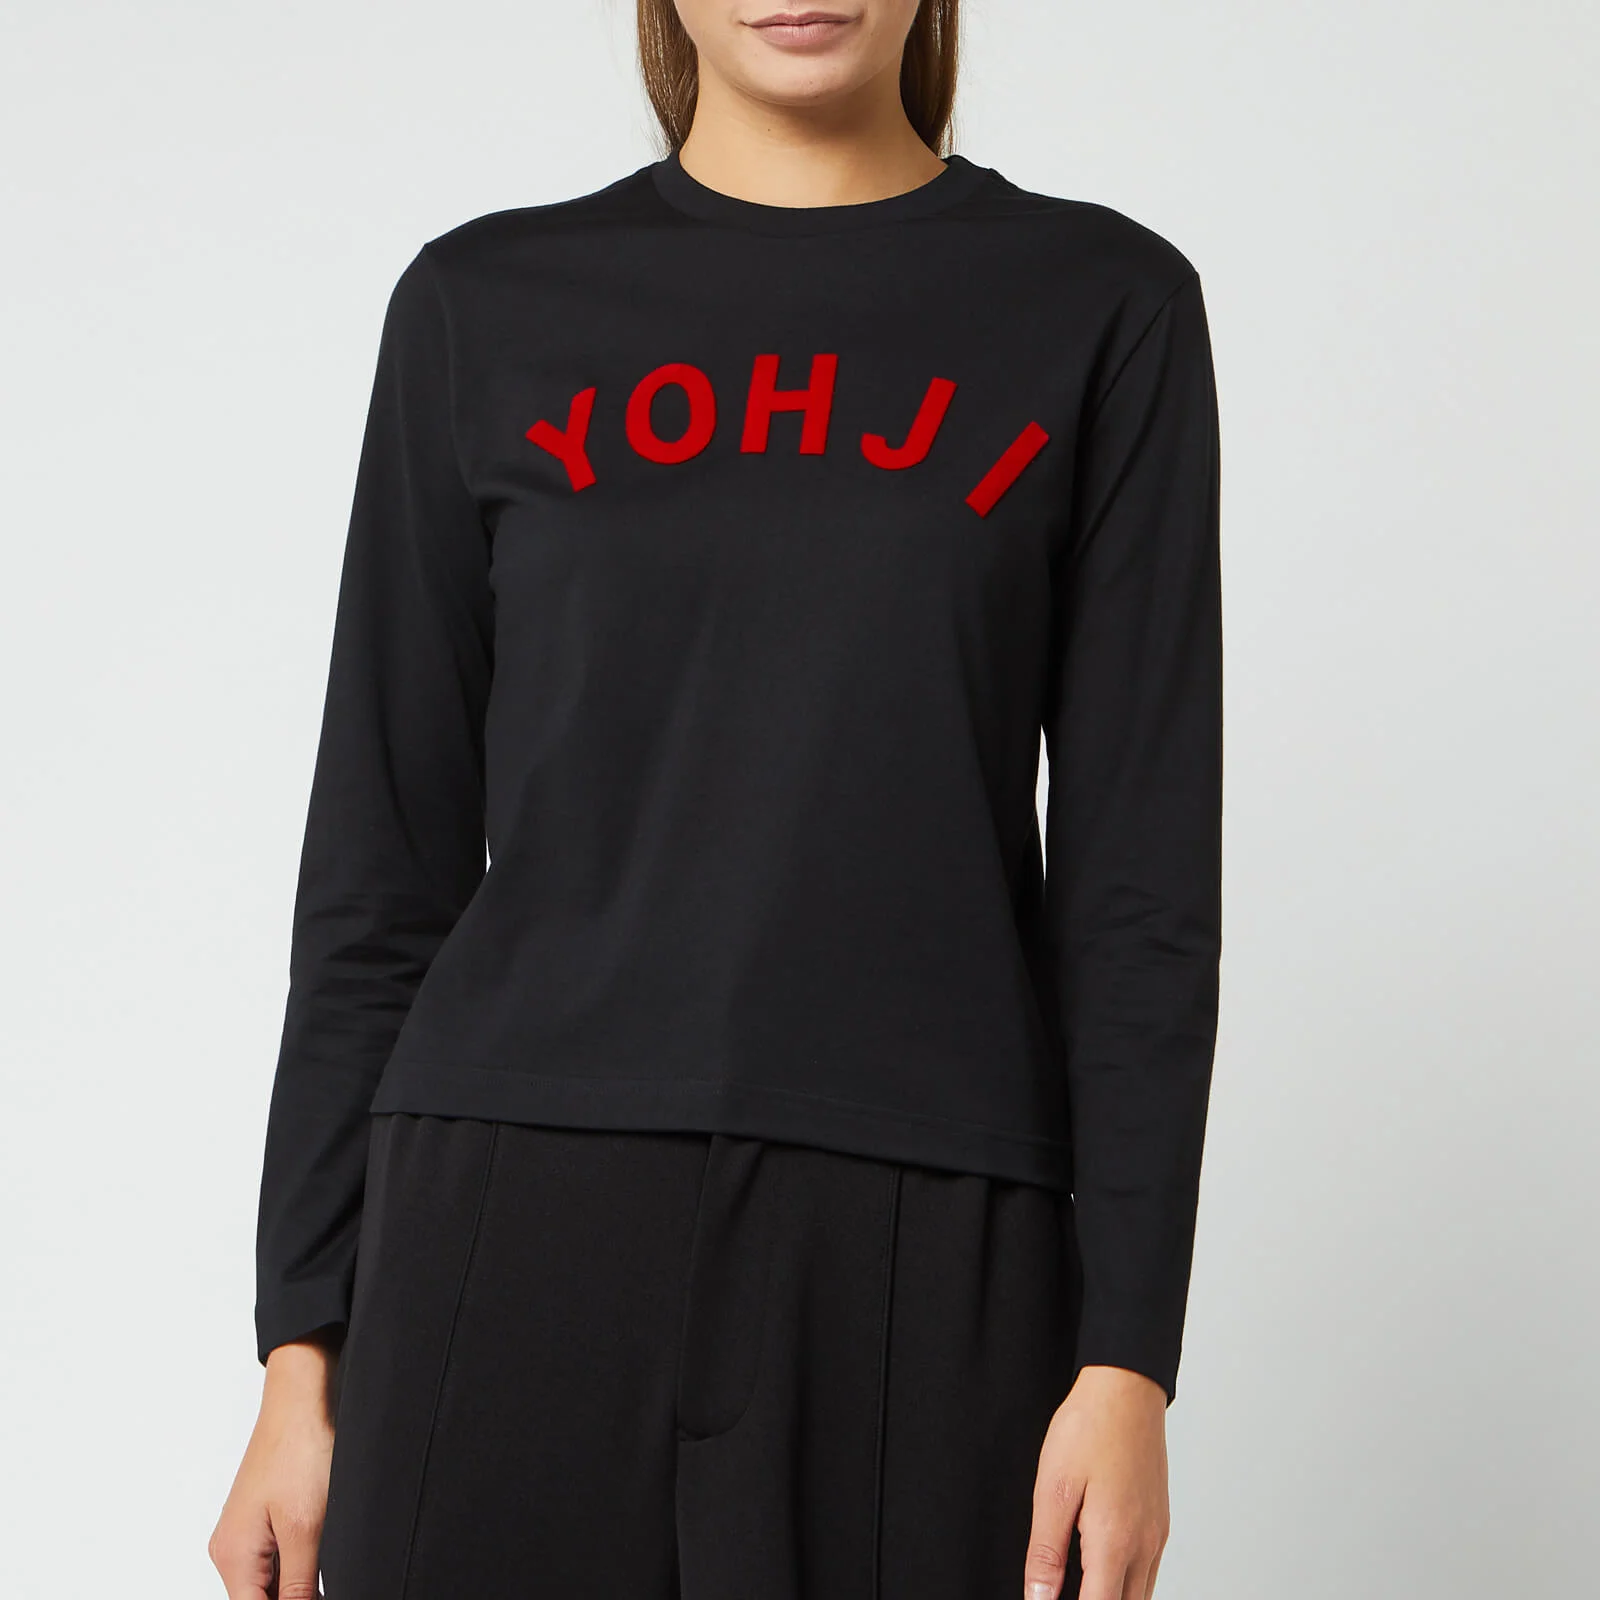 Y-3 Women's Yohji Letters Long Sleeve T-Shirt - Black/Yohji Red Image 1